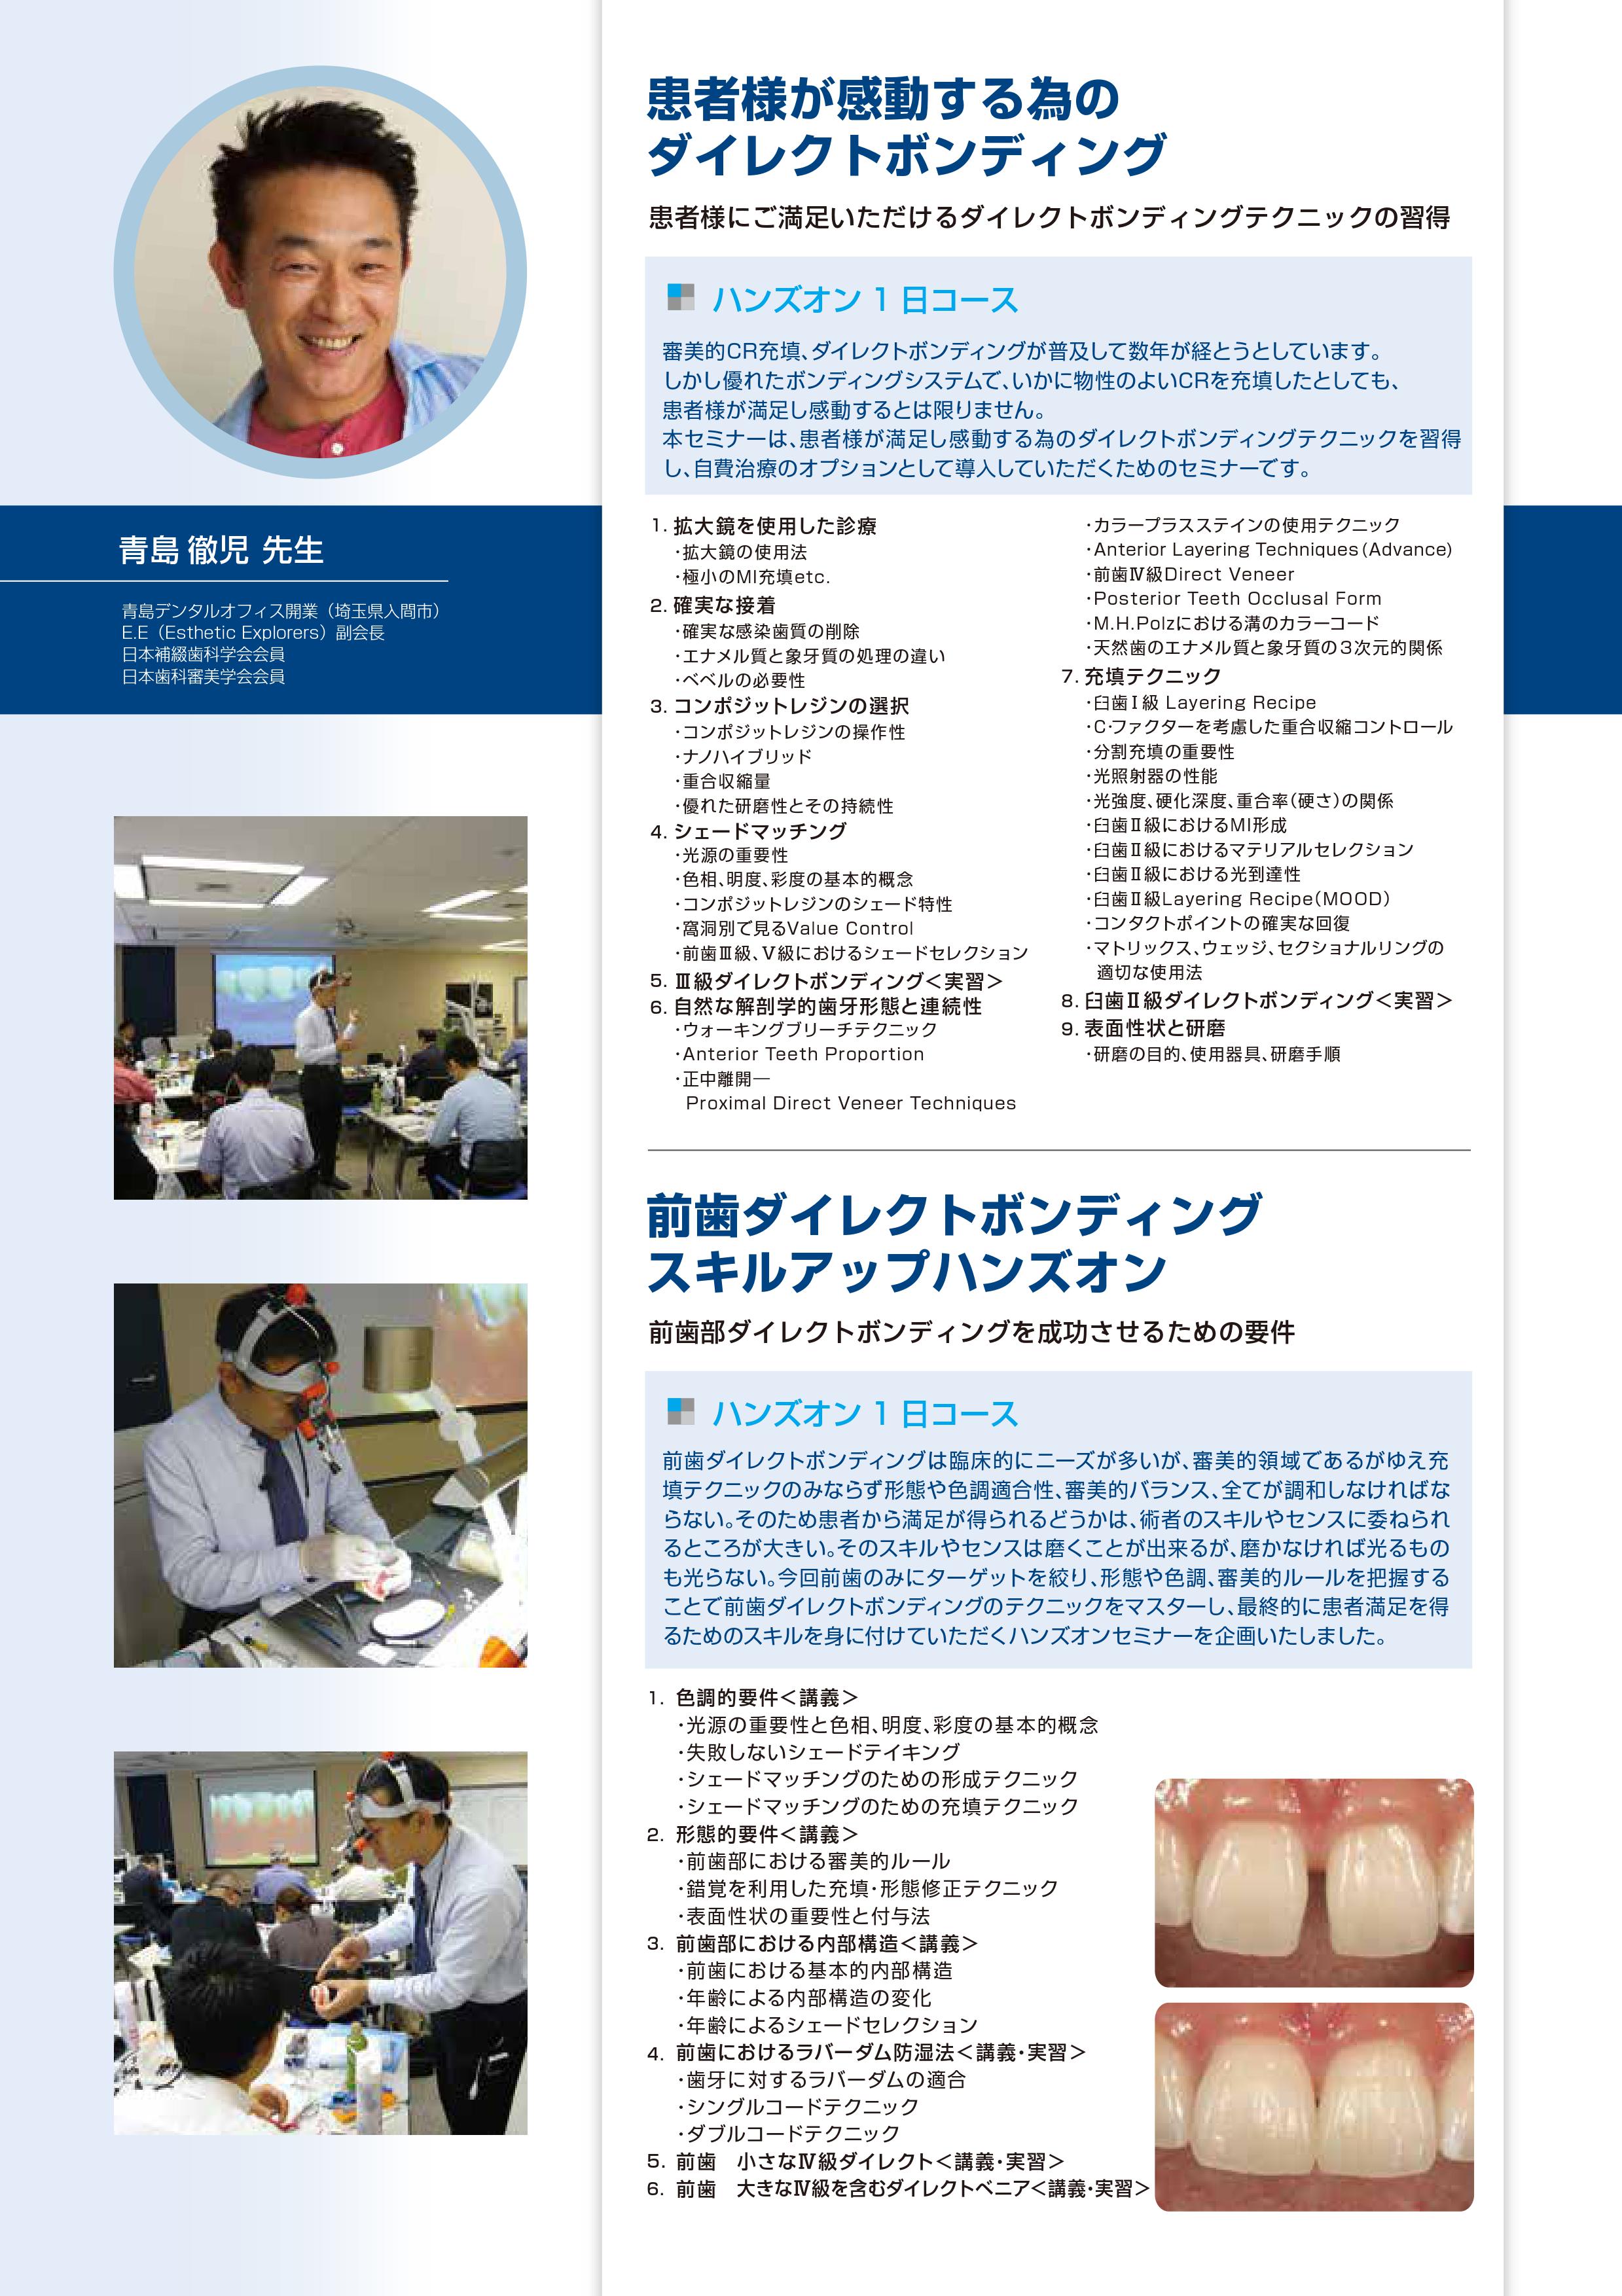 前歯ダイレクトボンディング スキルアップハンズオン | Doctorbook